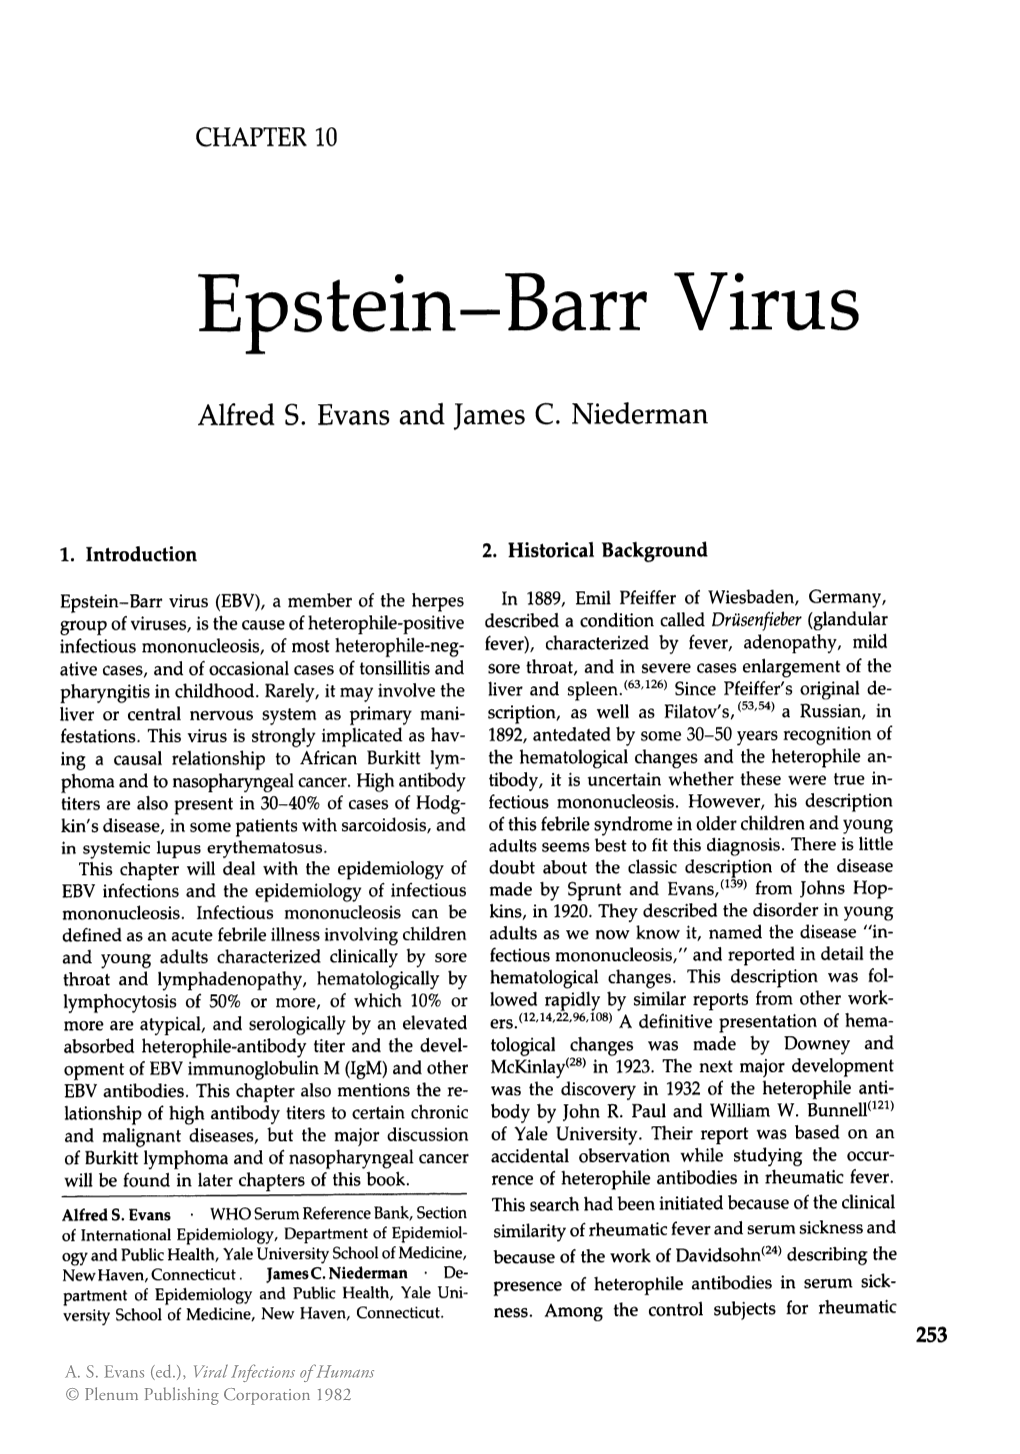 Epstein-Barr Virus